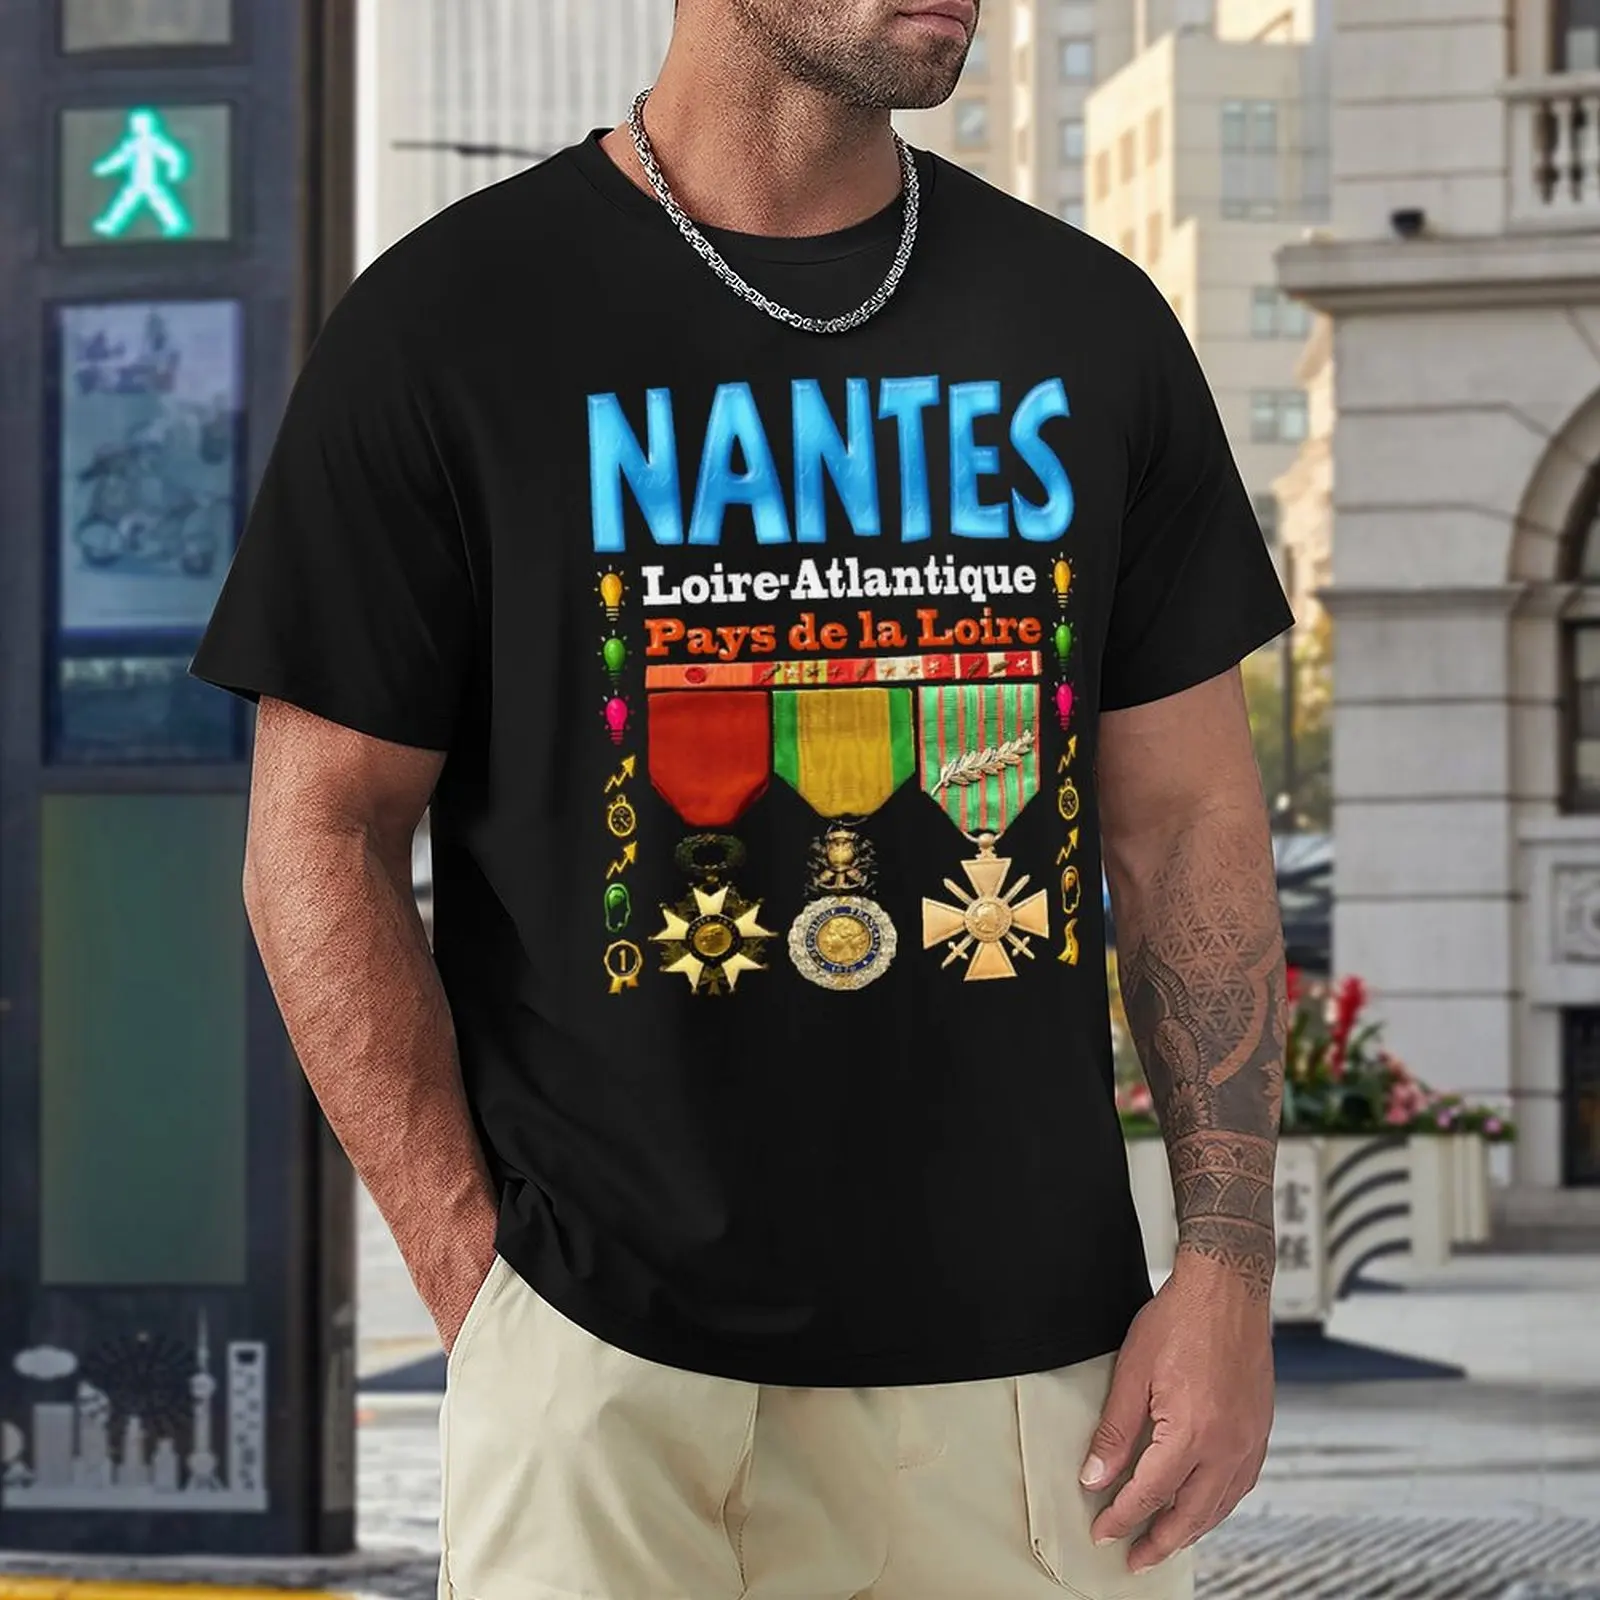 

Забавная футболка Nantes, Луара и страны Луара, смешная футболка, свежее движение, забавная Новинка для соревнований по активности, США, размер